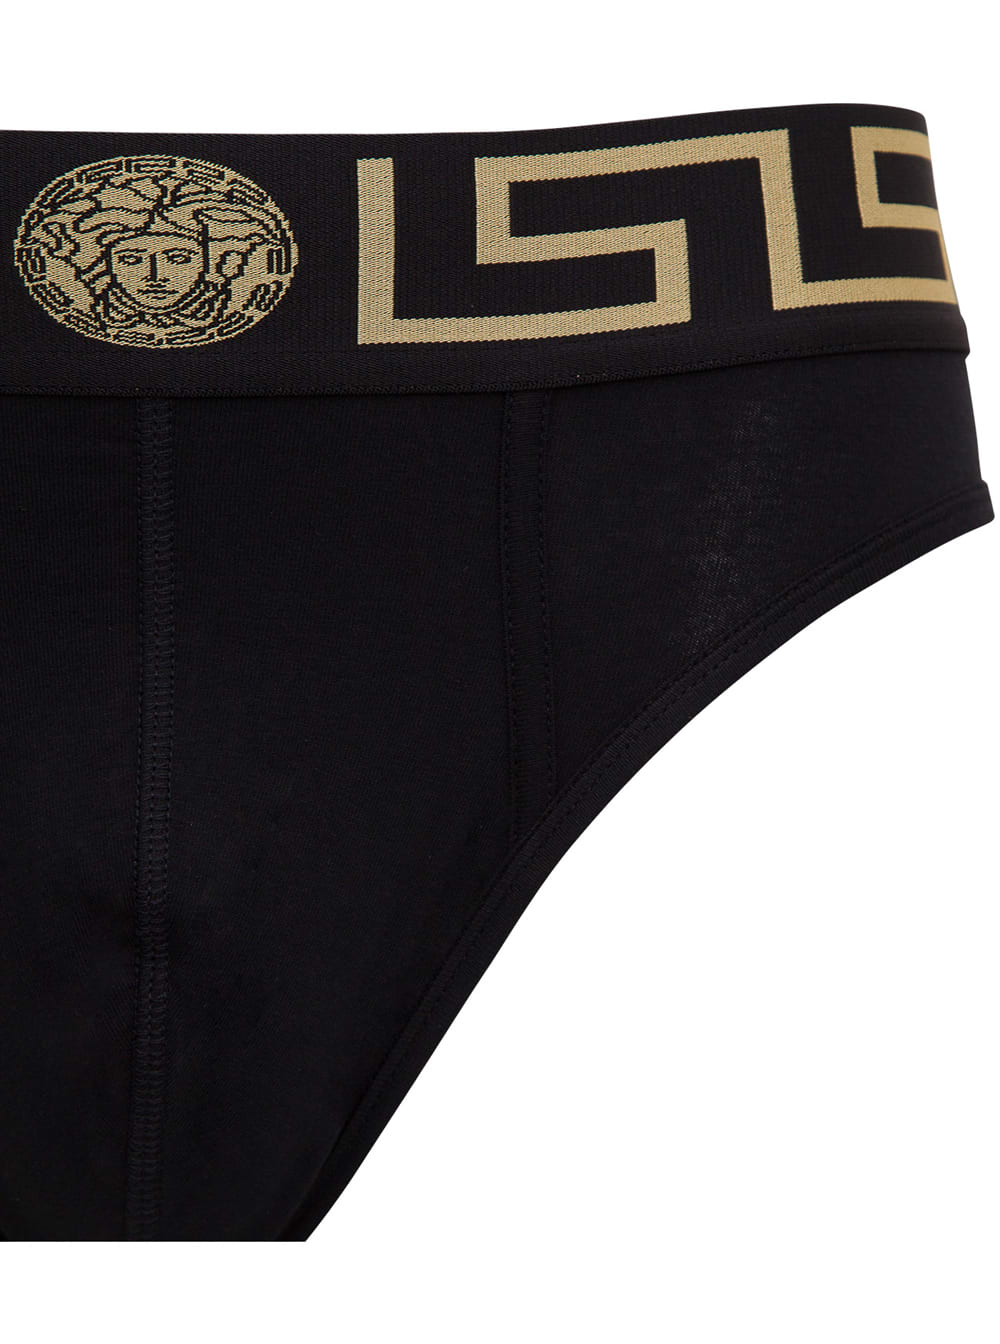 Versace Cotton Slip Underwear With Logo